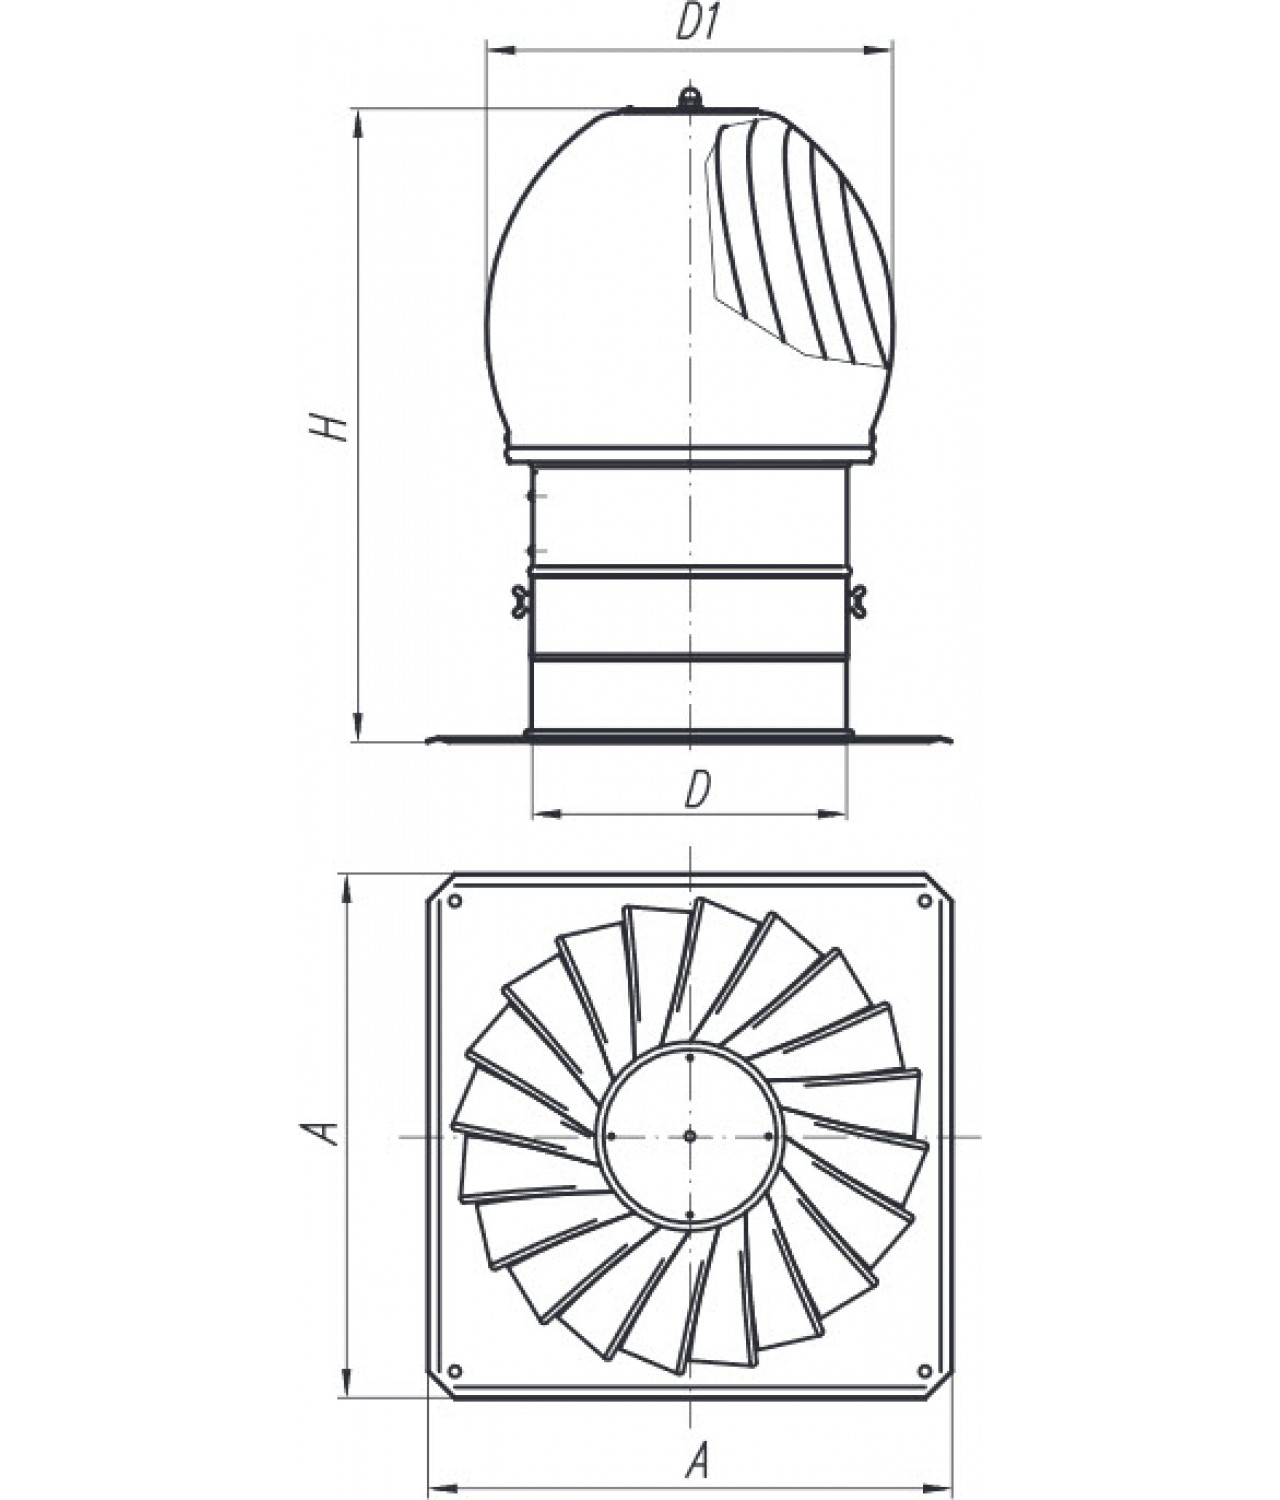 Дефлекторы вентиляционные MINI-TURBO-N - чертеж